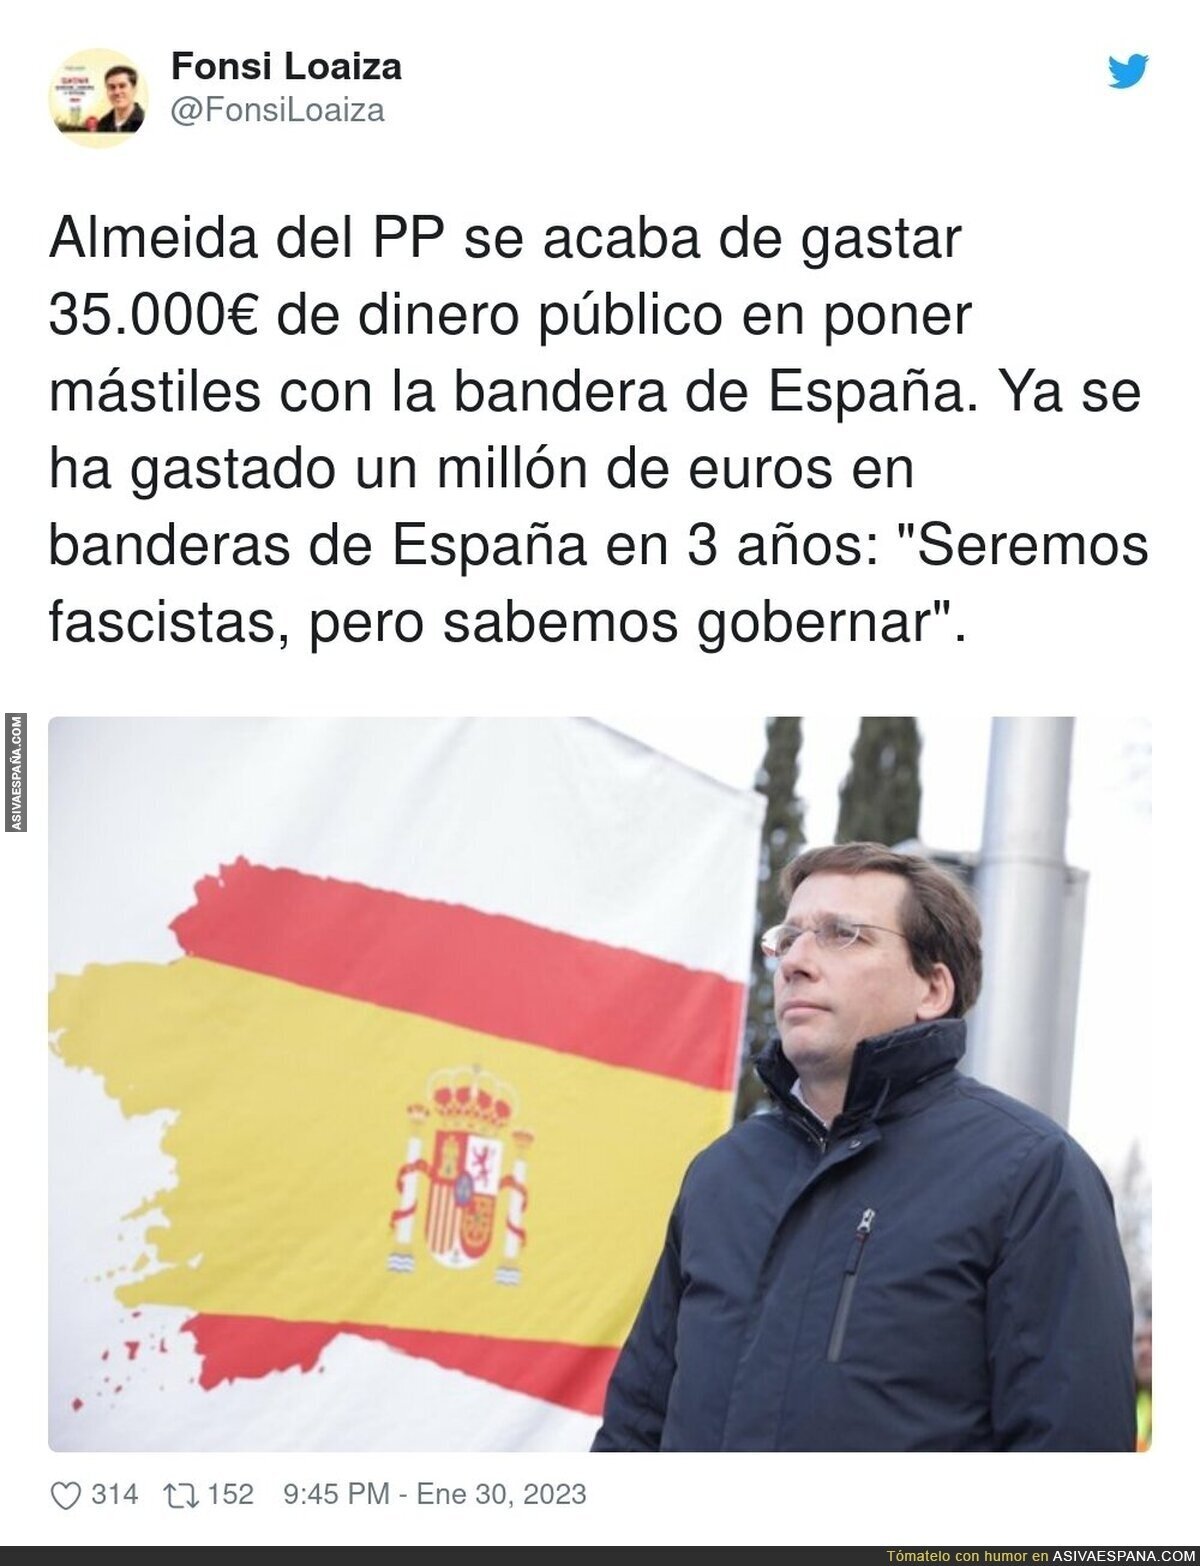 La forma de gobernar de José Luis Martínez Almeida a golpe de banderitas